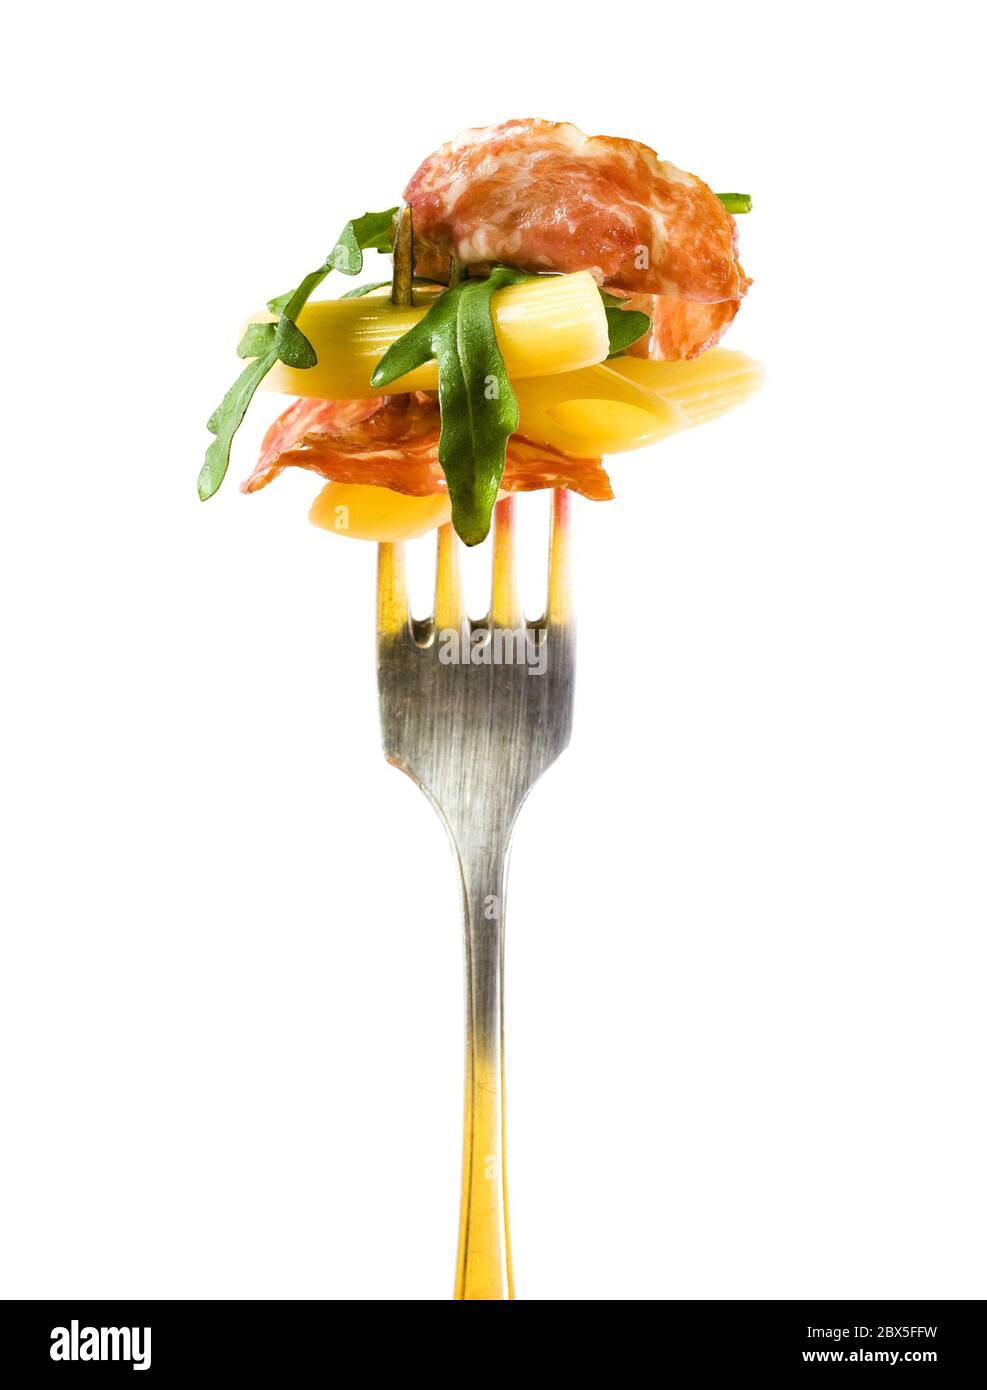 insalata italiana con pasta, foglie di rucola e fetta di salame appiccicate su una forchetta d'argento, isolata su sfondo bianco Foto Stock